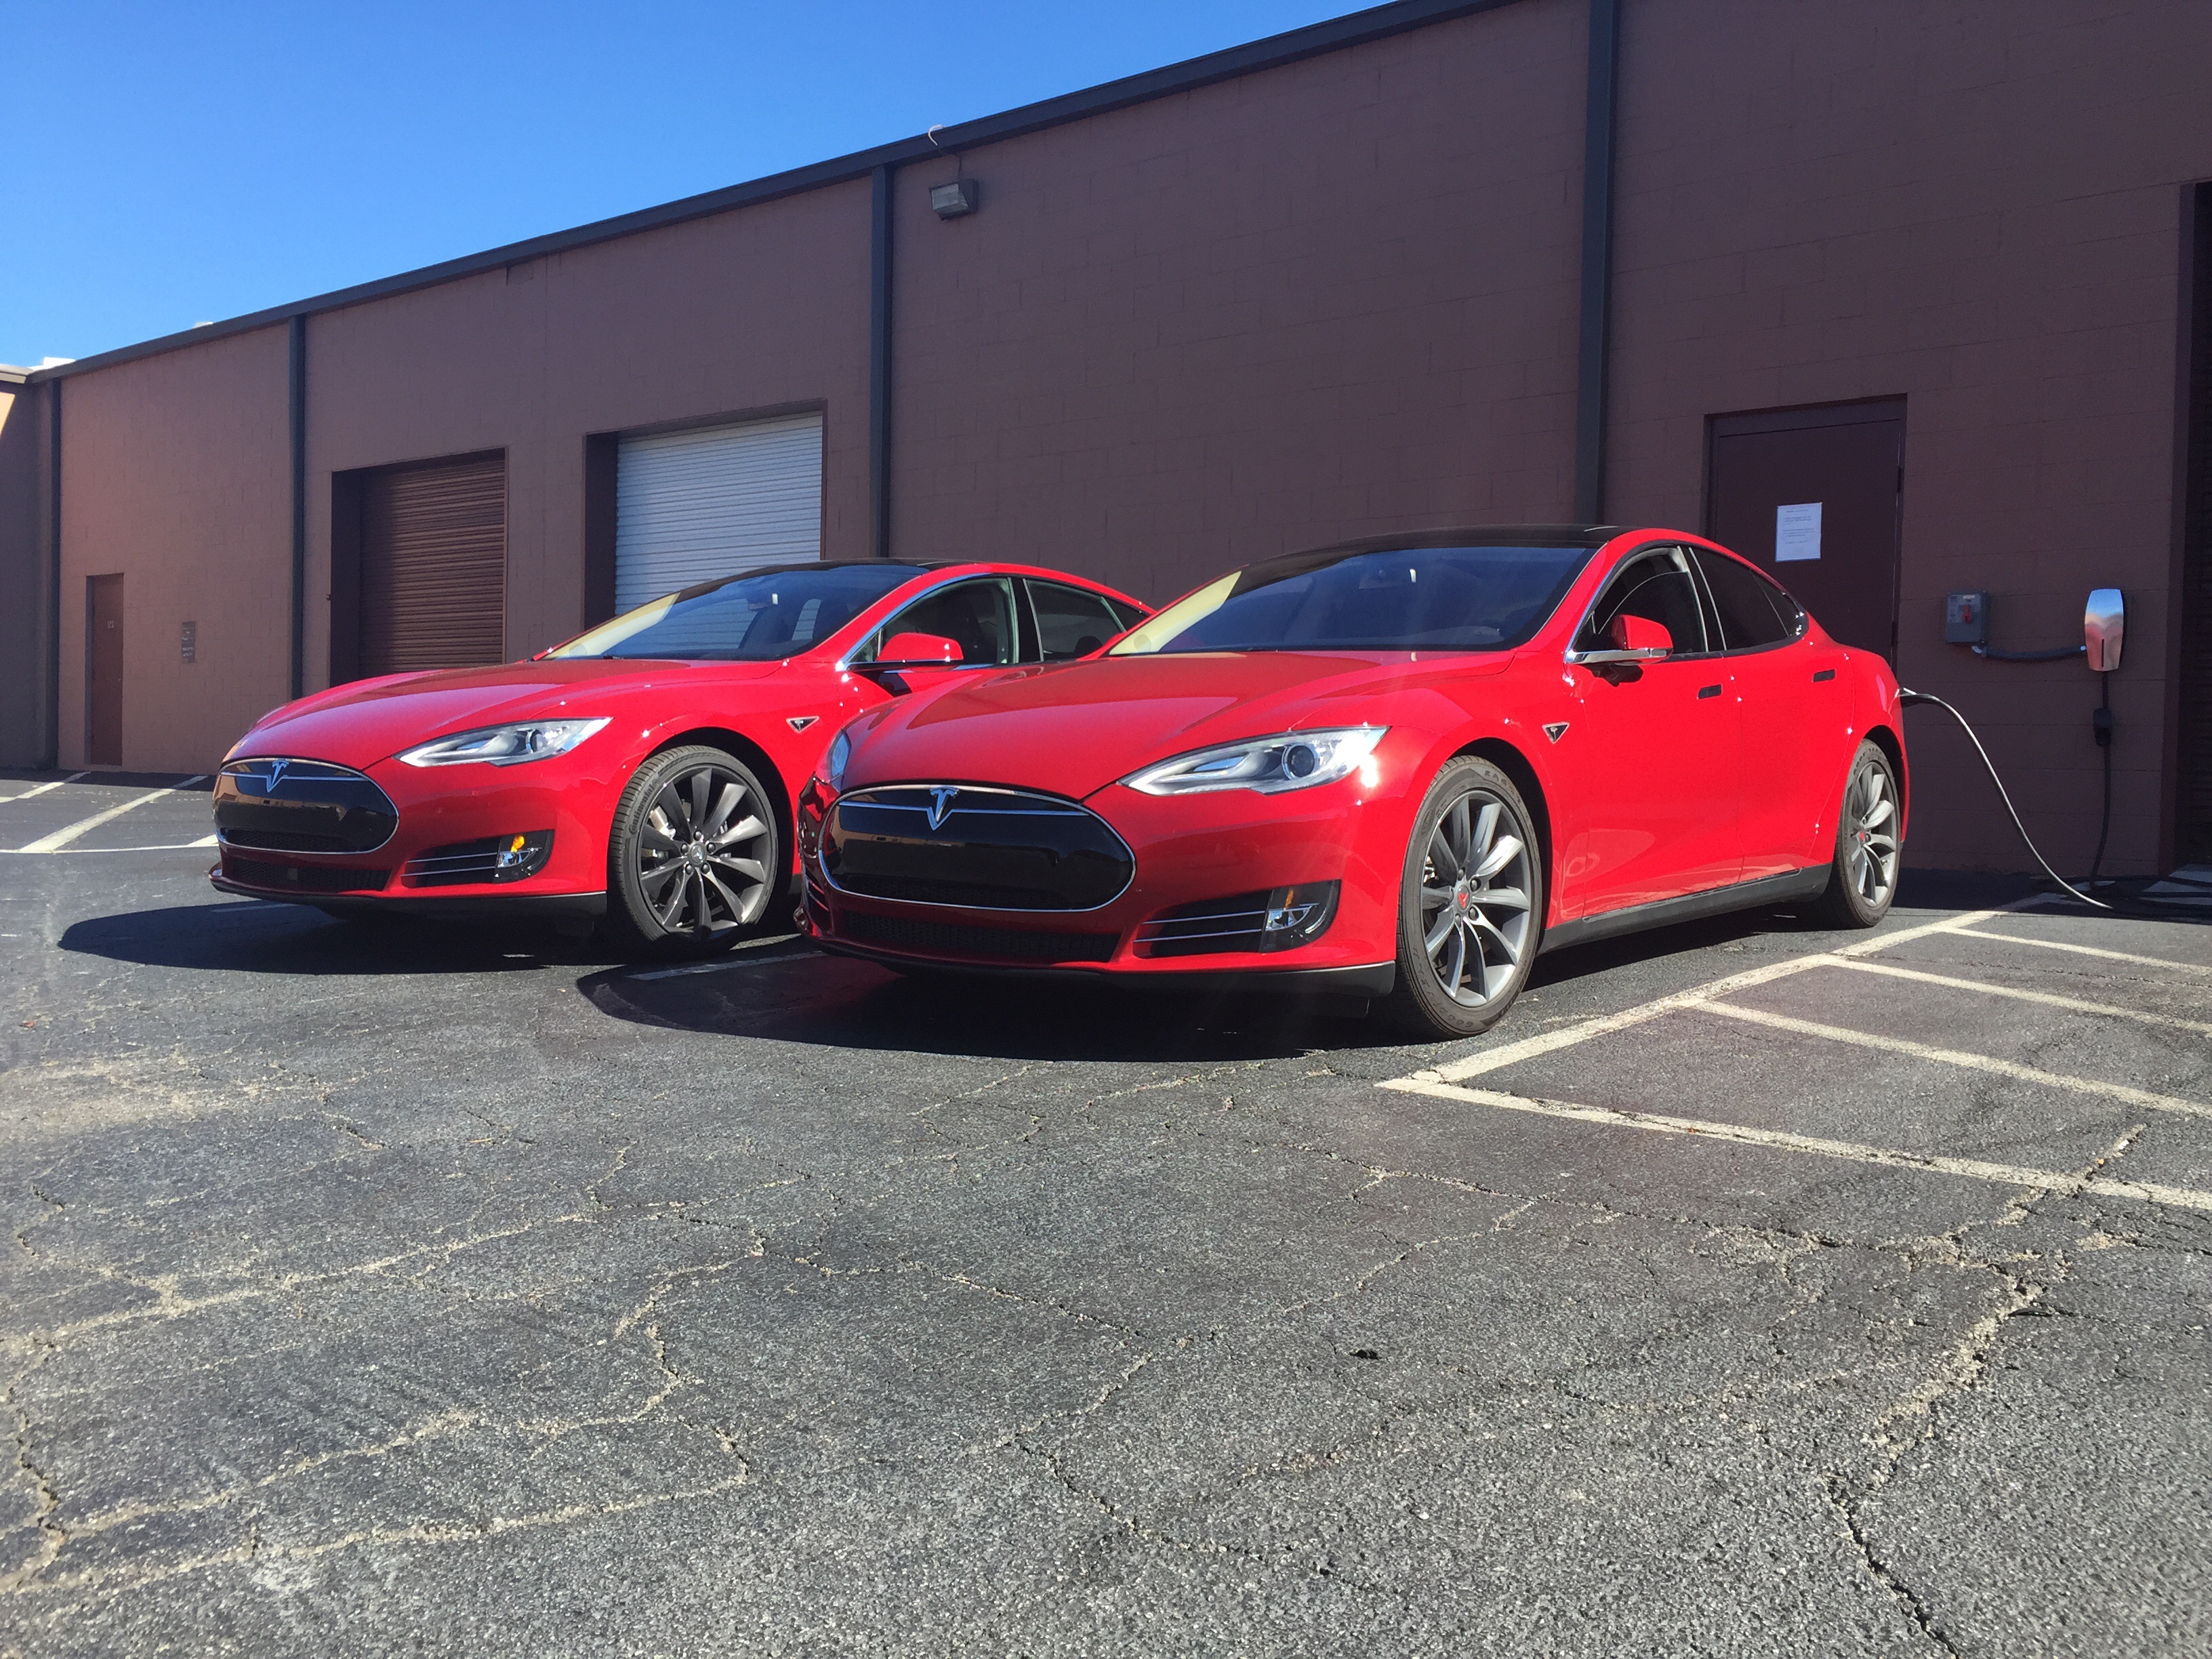 Grijze T Sportline velgen vs Grijze Tesla velgen met MC Red Model S.jpg